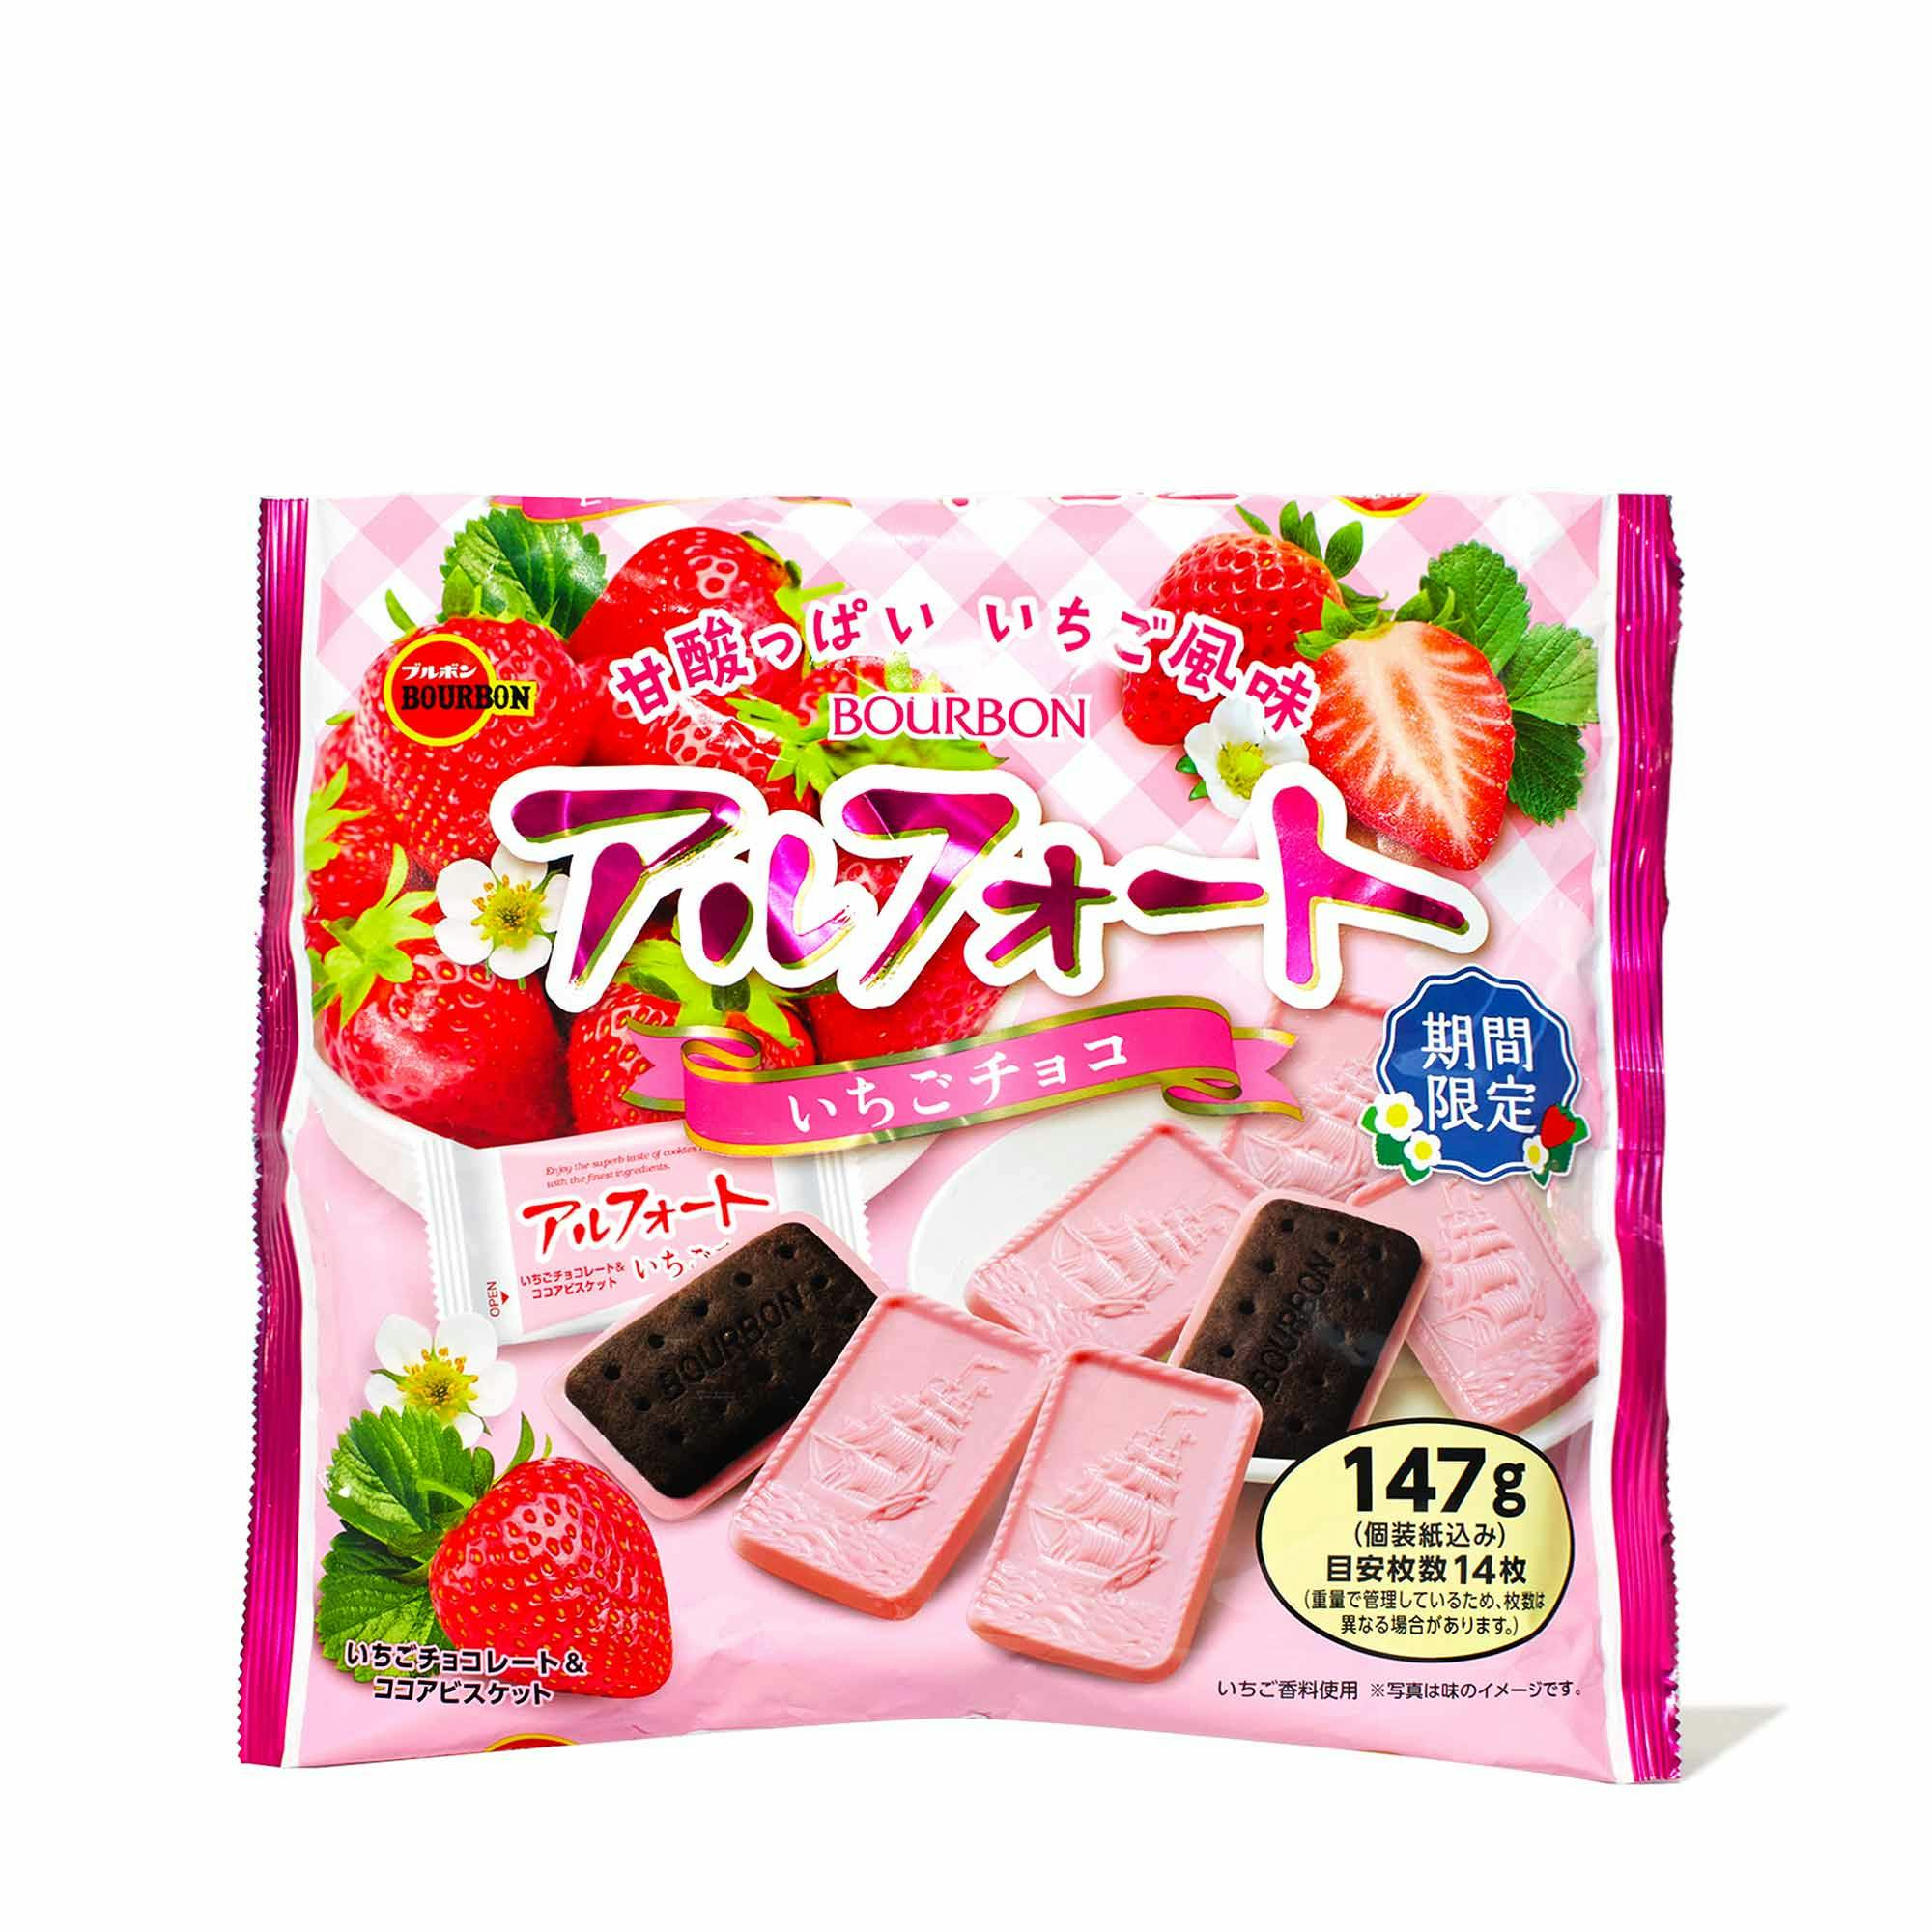 波本 草莓巧克力帆船饼干 BOURBON Biscuit ALFORT Strawberry Chocolate